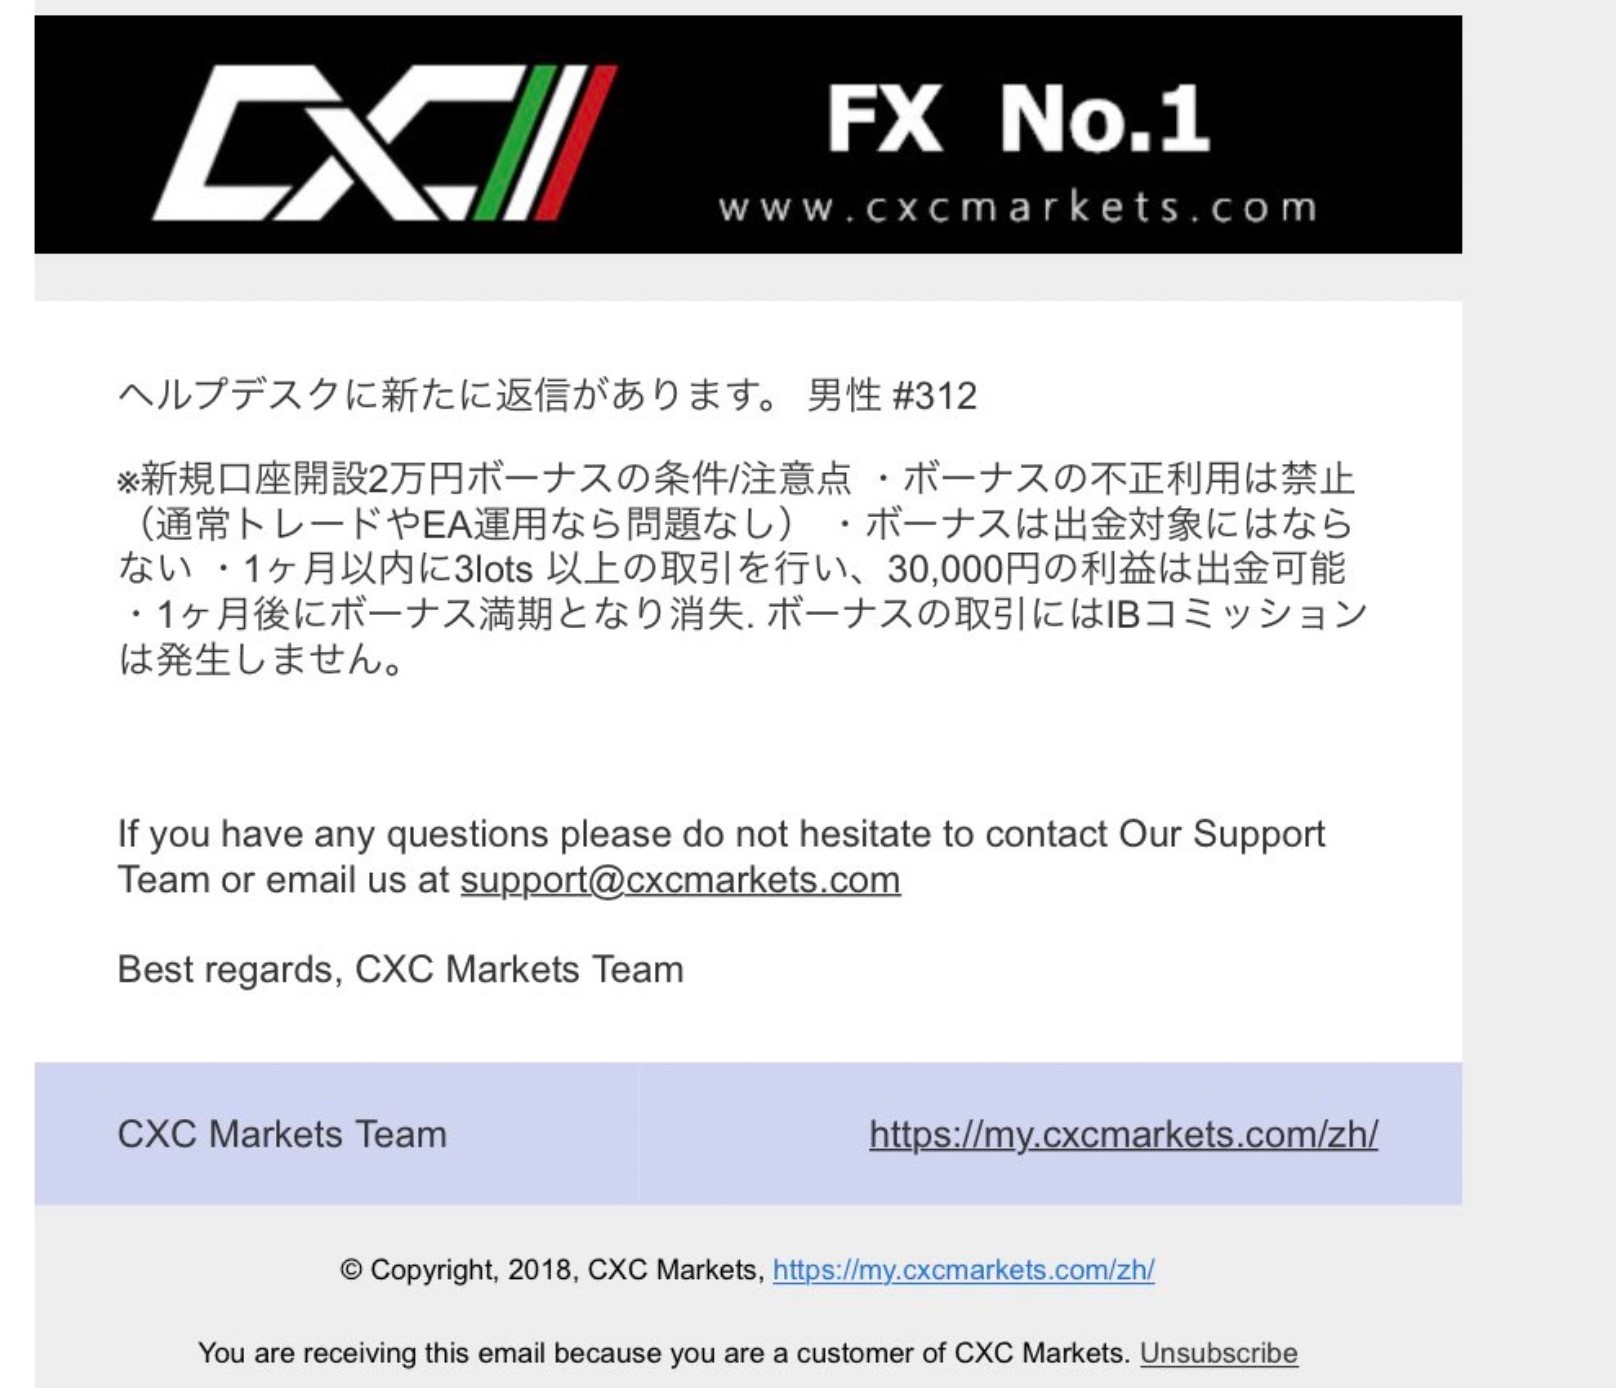 海外FX CXC Marketsの口座開設ボーナス概要